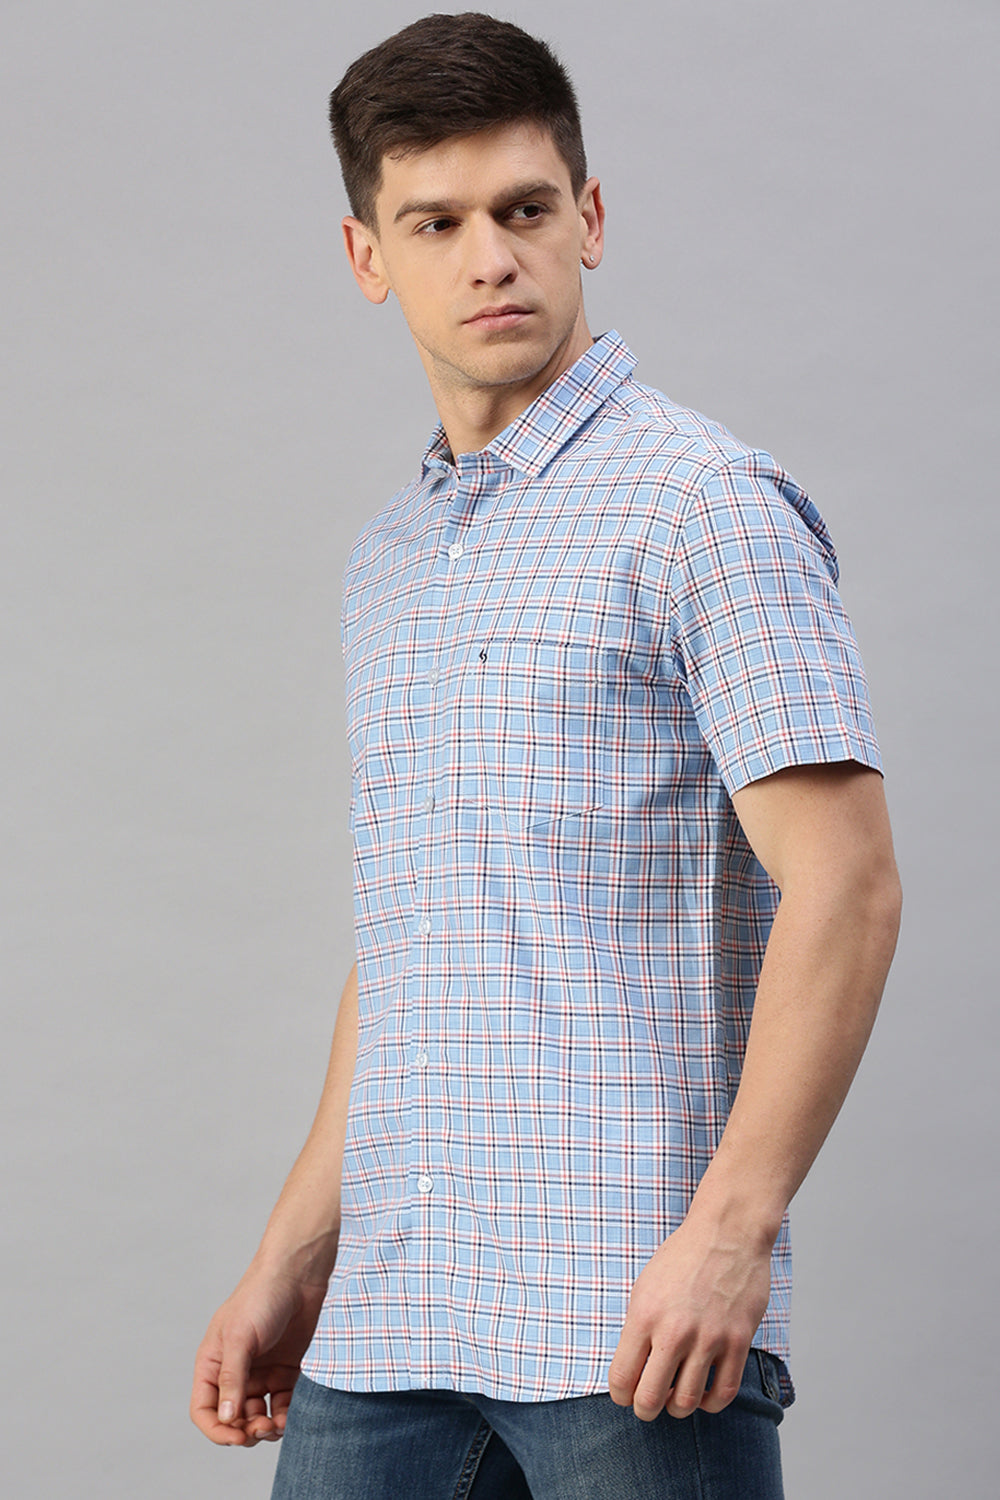 Premium Mens Woven Shirt. Explore Cotton, Linen & More.